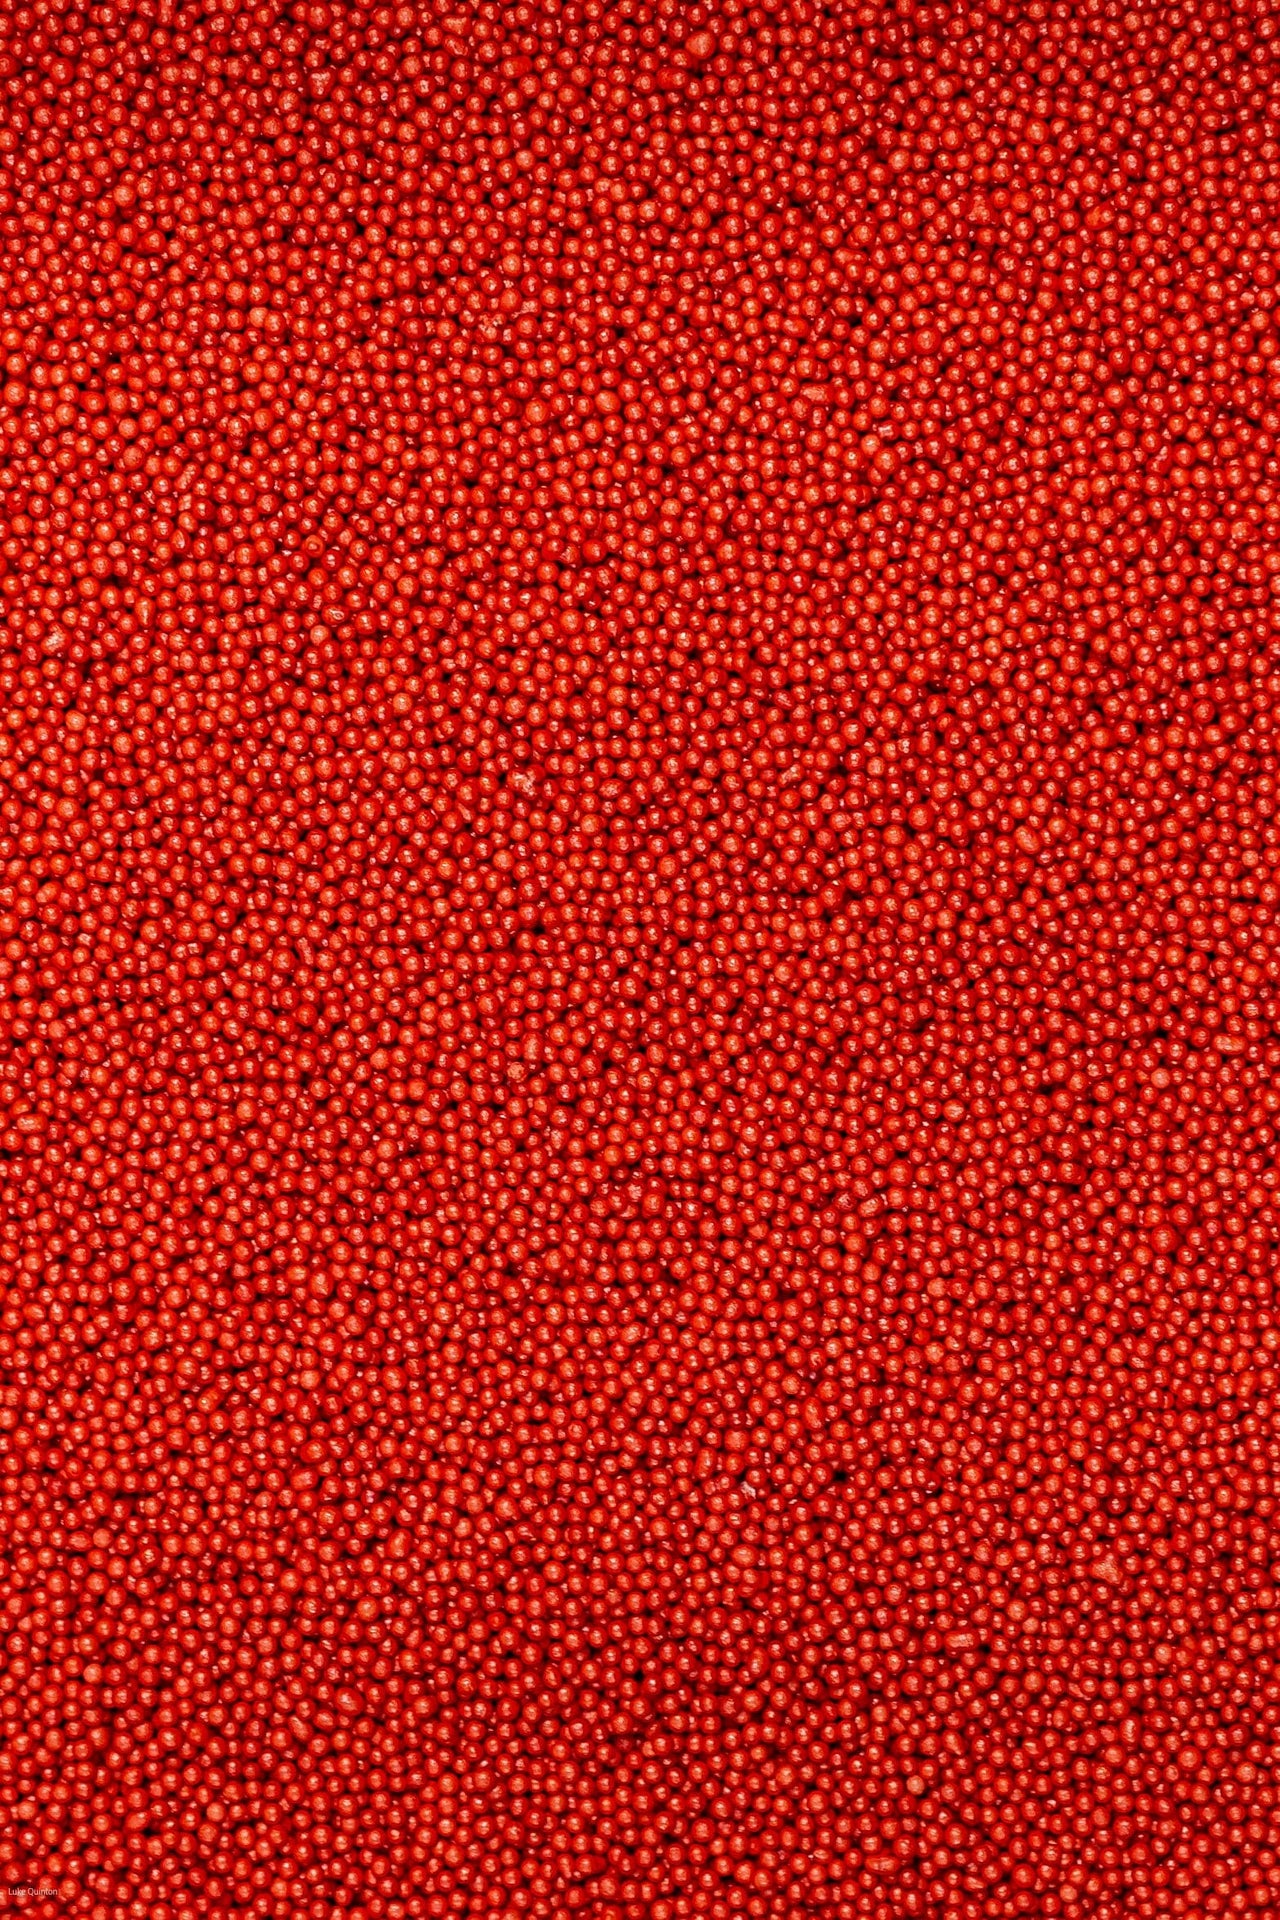 Glimmer 100's & 1000's - Red (No E171) Sprinkles SPRINKLY